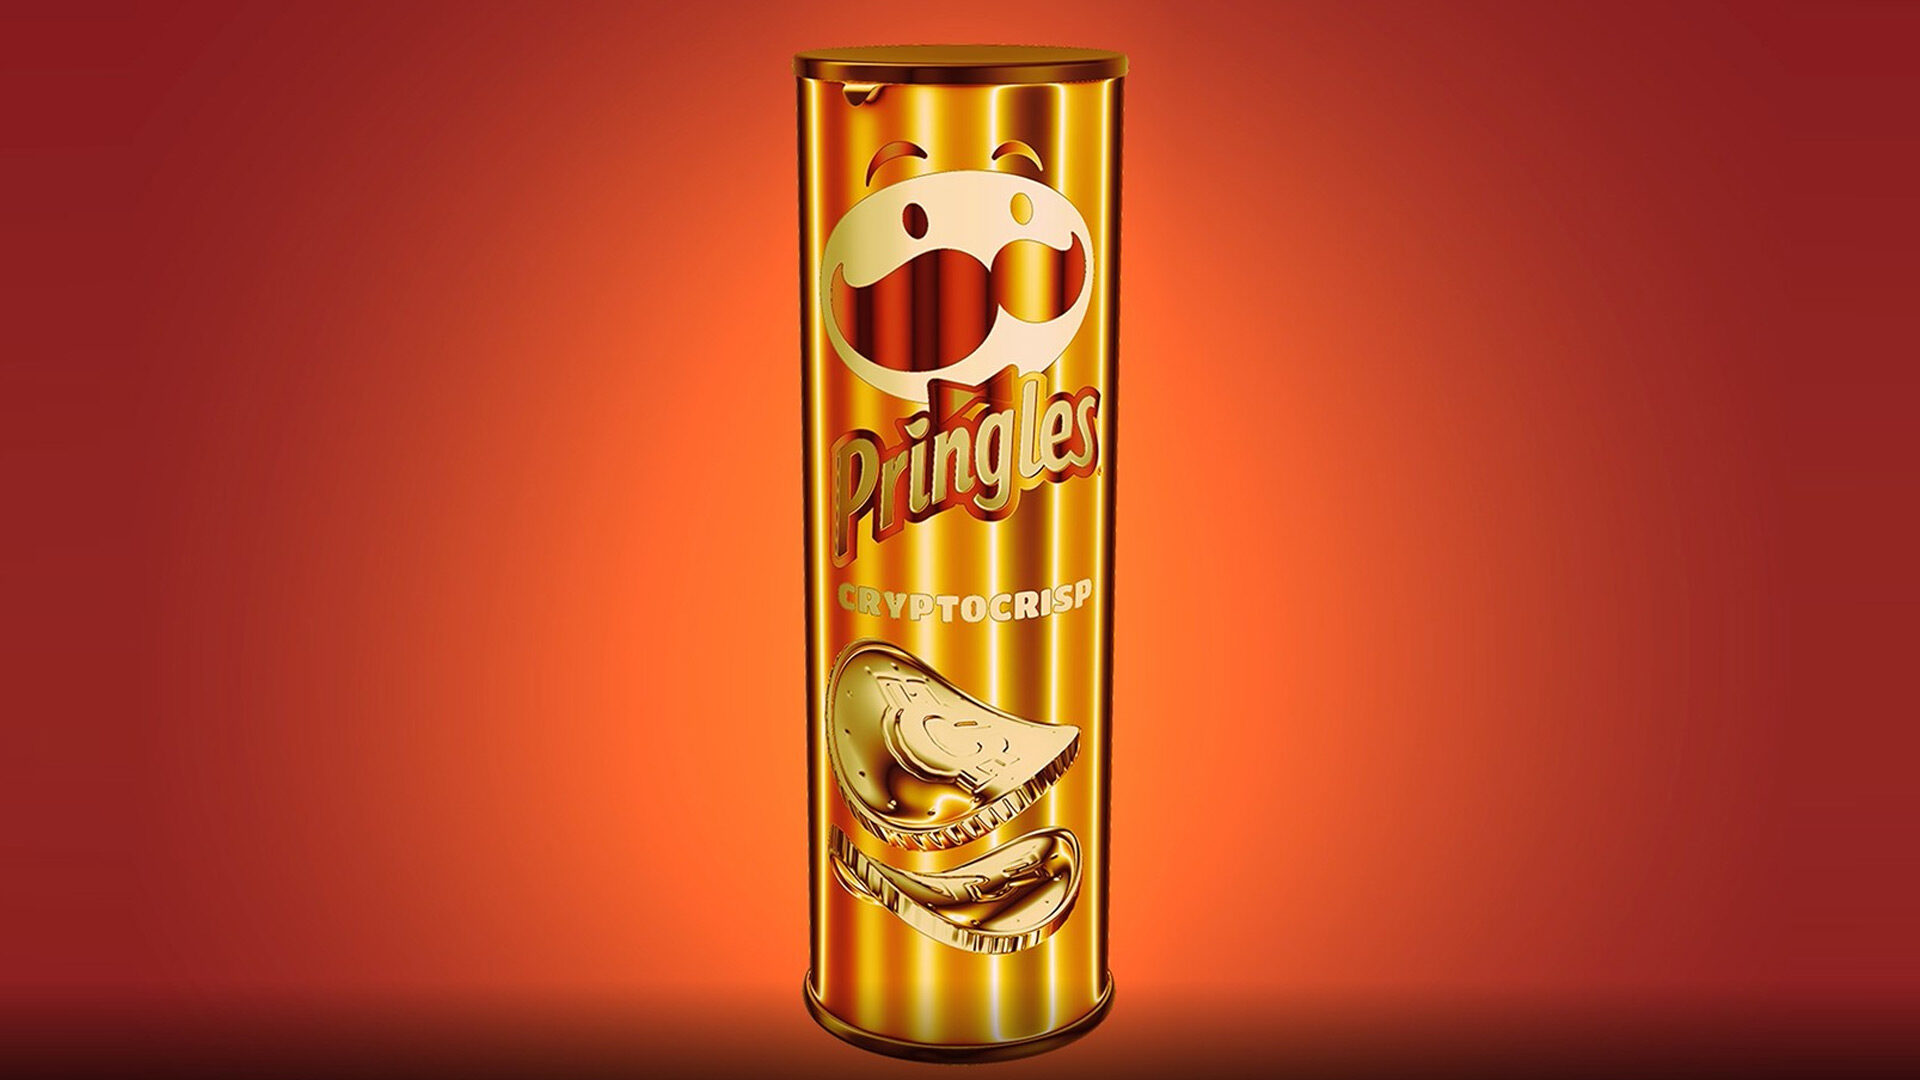 NFT, das neue Gold im Marketing? Zumindest für Pringles CryptoCrisp stimmt das bei der Verpackung.